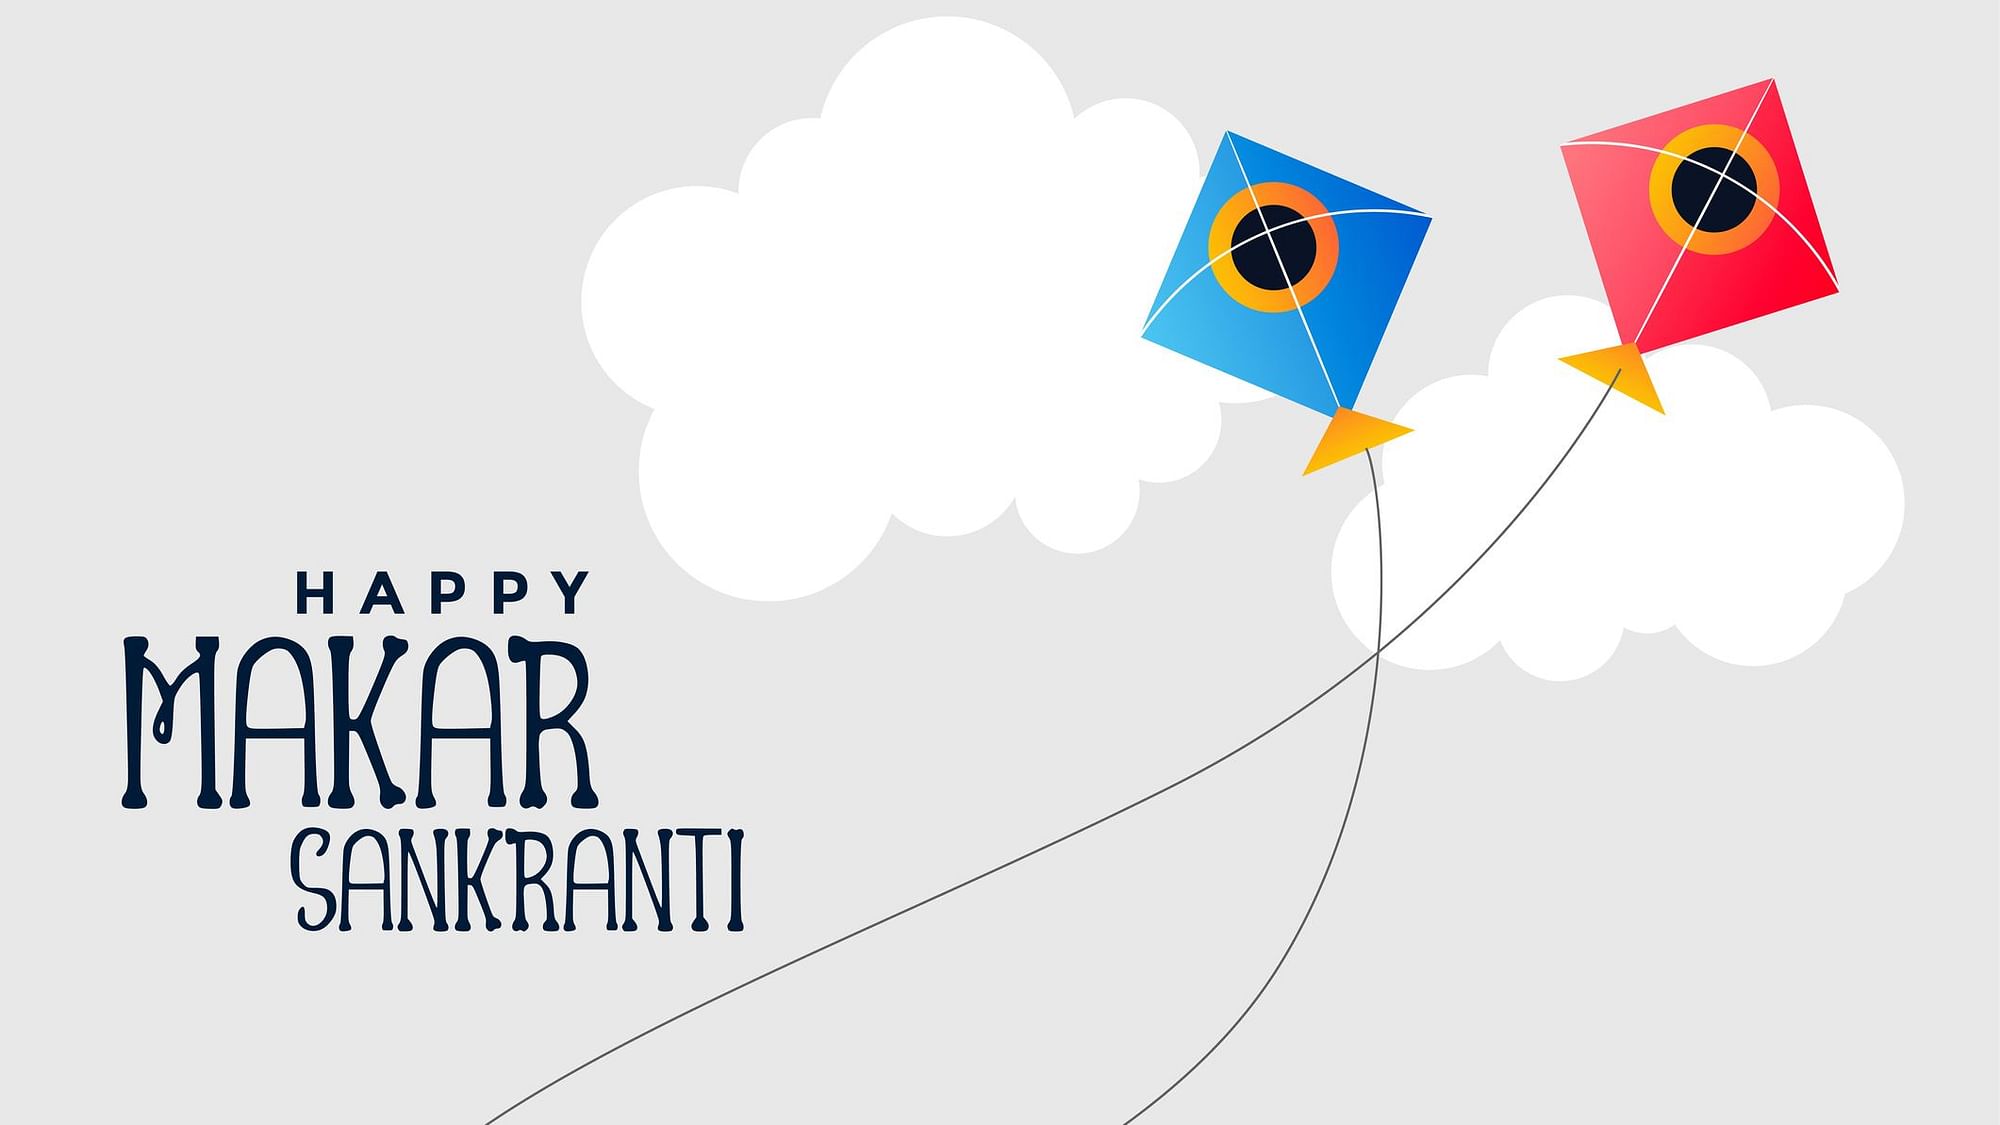 Makar Sankranti Kite Flying Festival 2020: मकर संक्रांति हिंदुओं का प्रमुख त्योहार है.